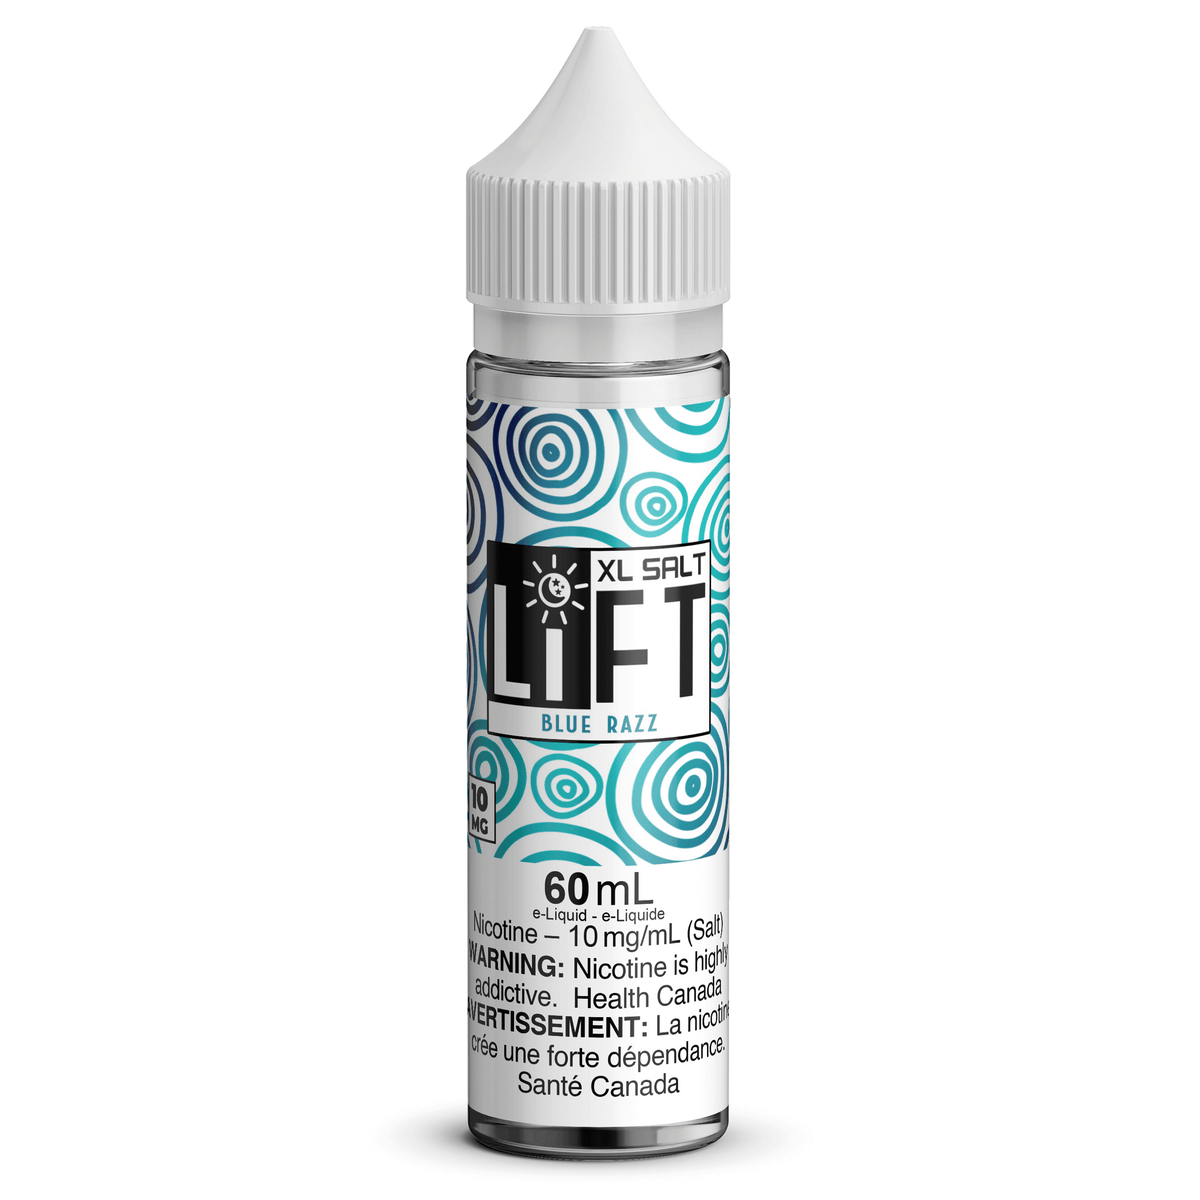 LIFT XL SALT - Blue Razz available on Canada online vape shop